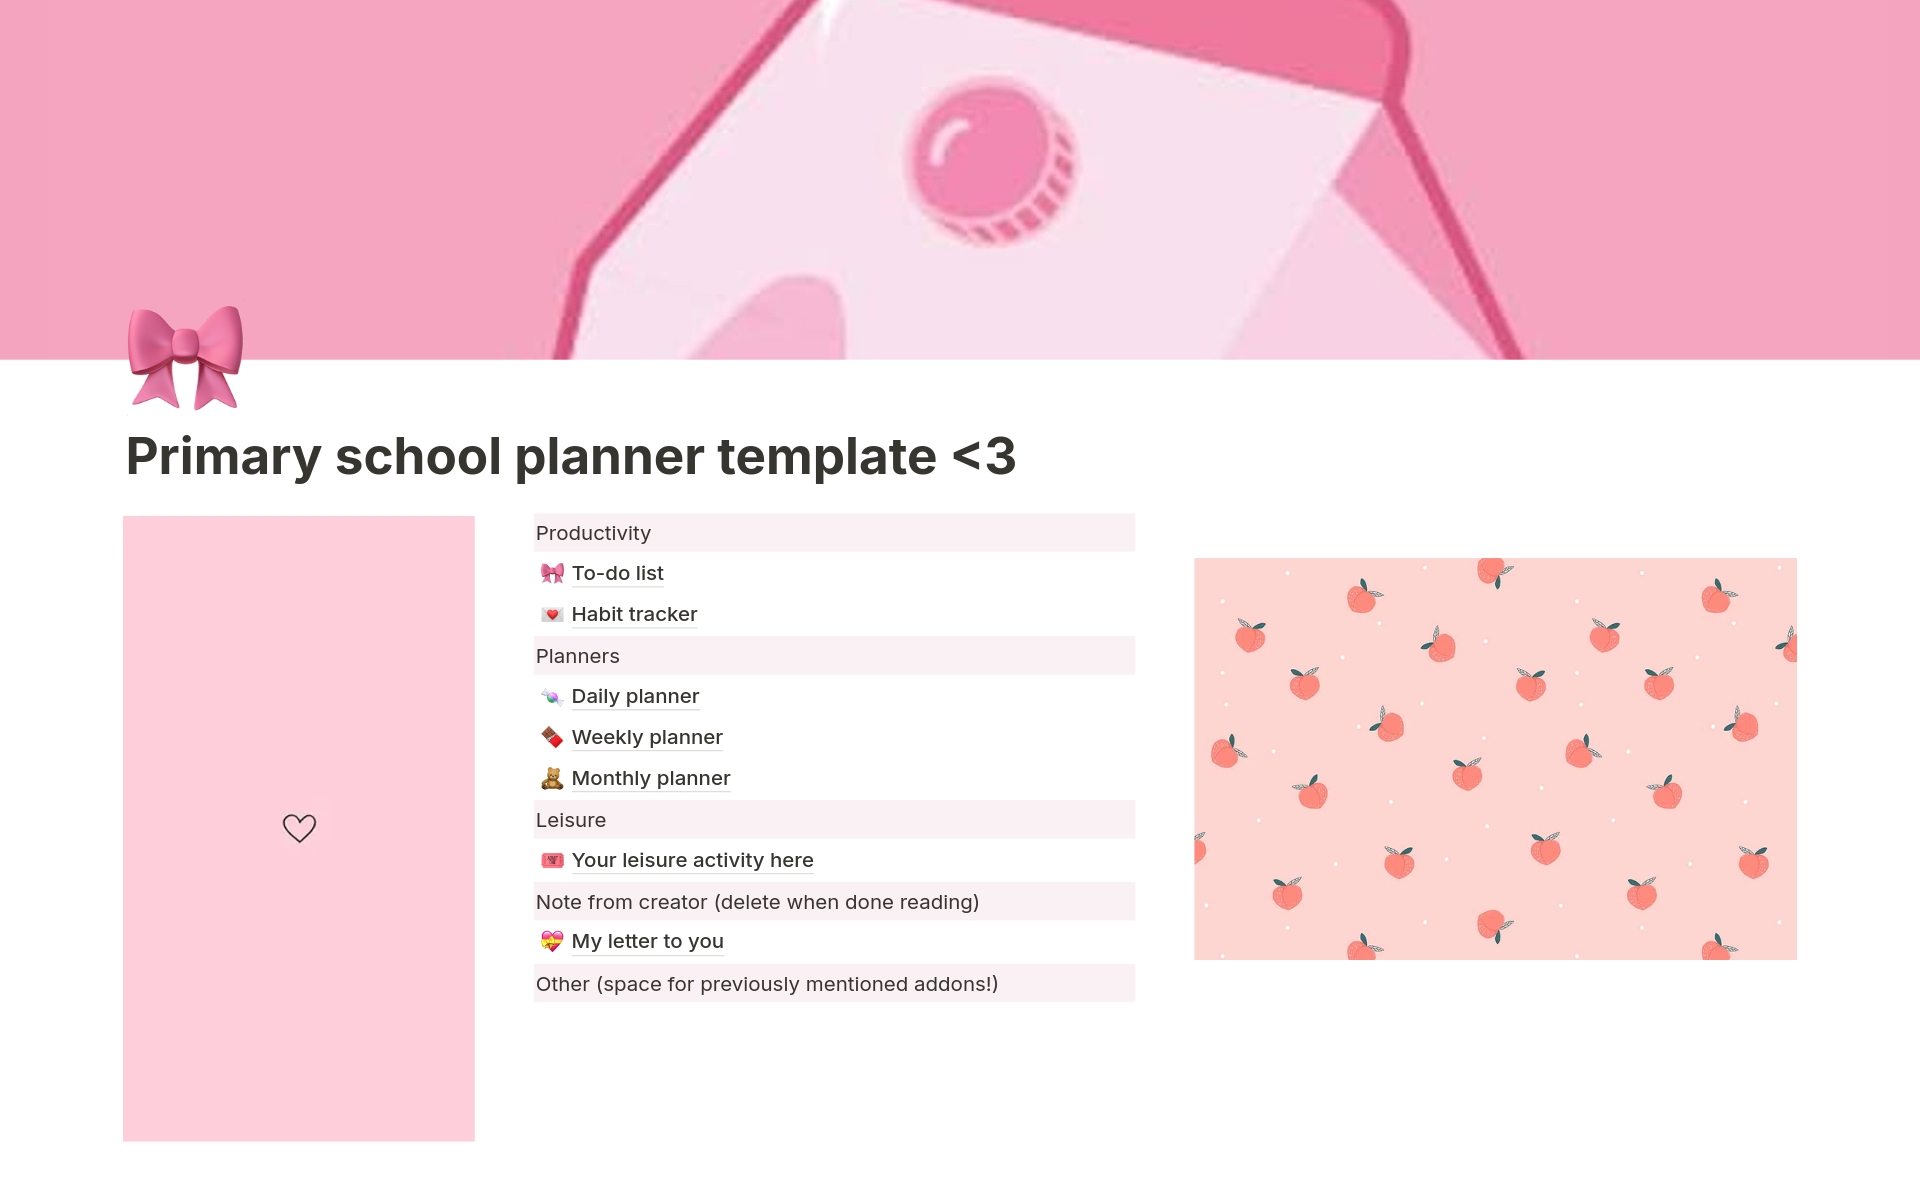 Uma prévia do modelo para Primary school planner pink!